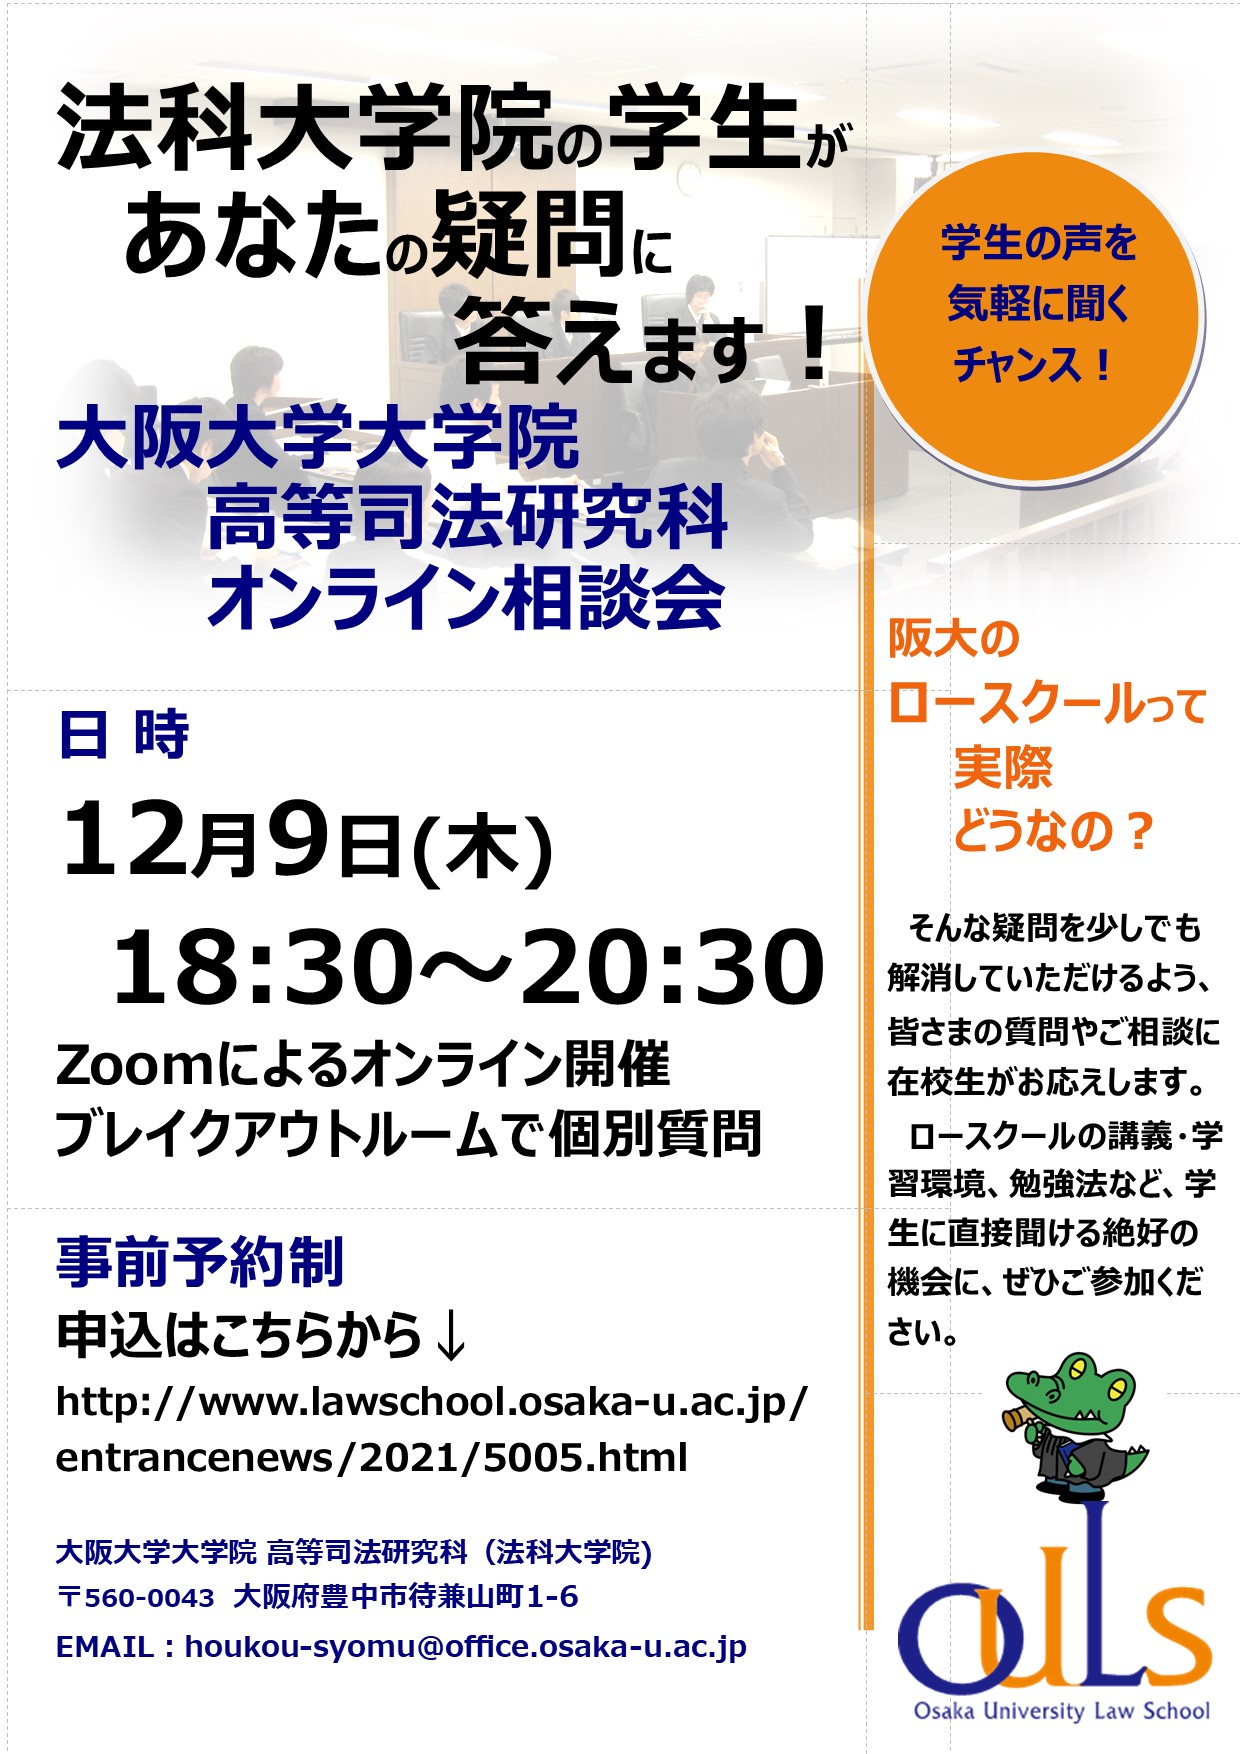 在校生があなたの疑問に答えます オンライン法科大学院相談会 12 9開催 大阪大学